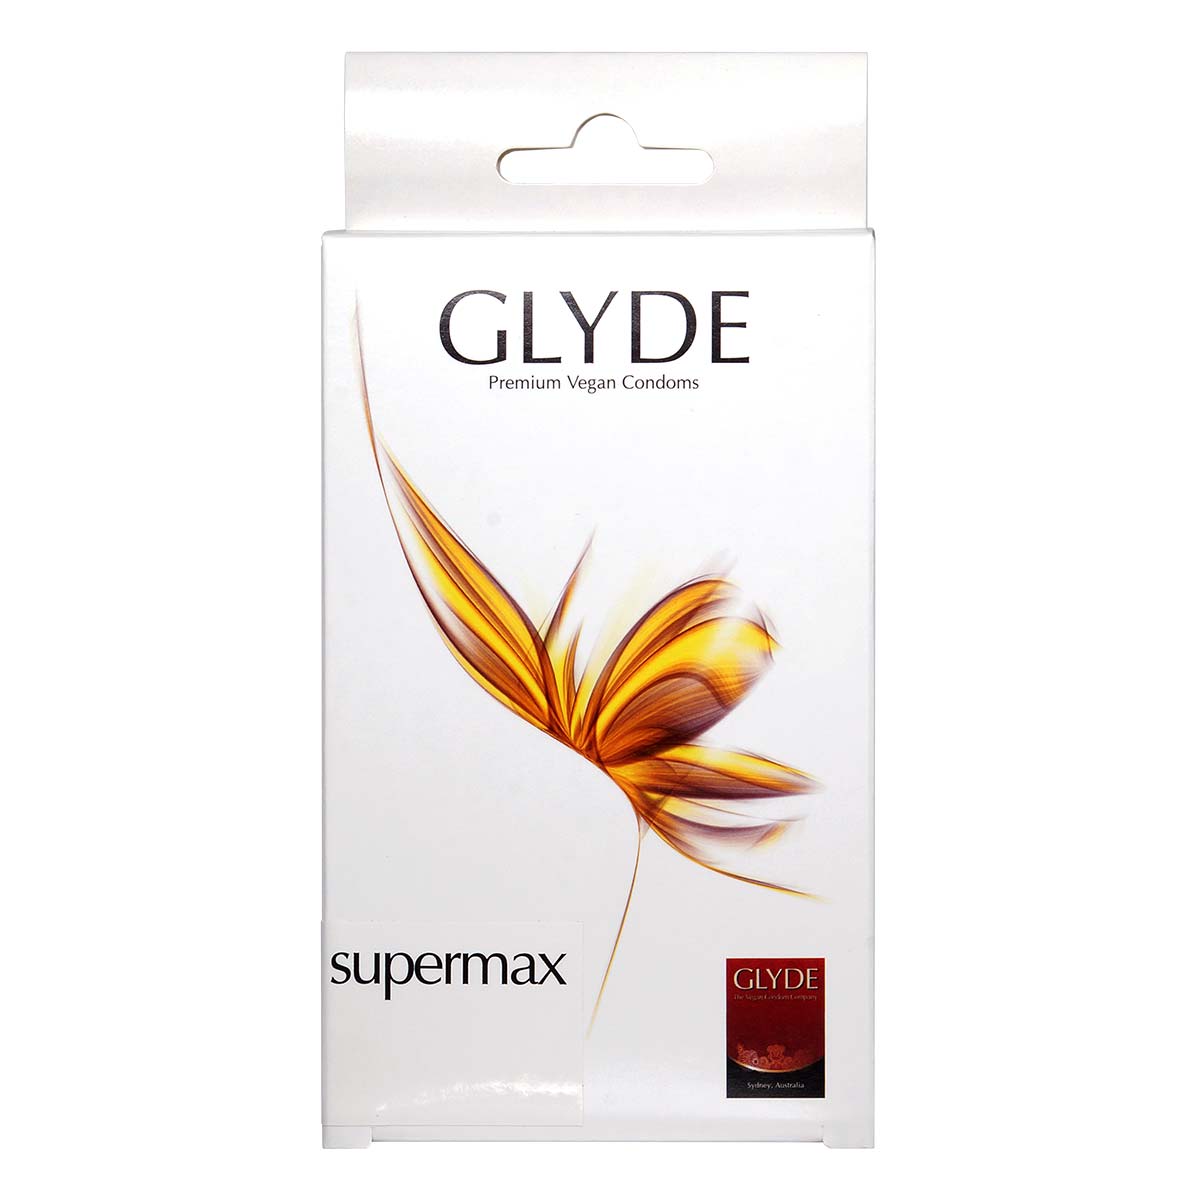 Glyde 格蕾迪 素食主义安全套 加大码 60mm 10 片装 乳胶安全套-p_2